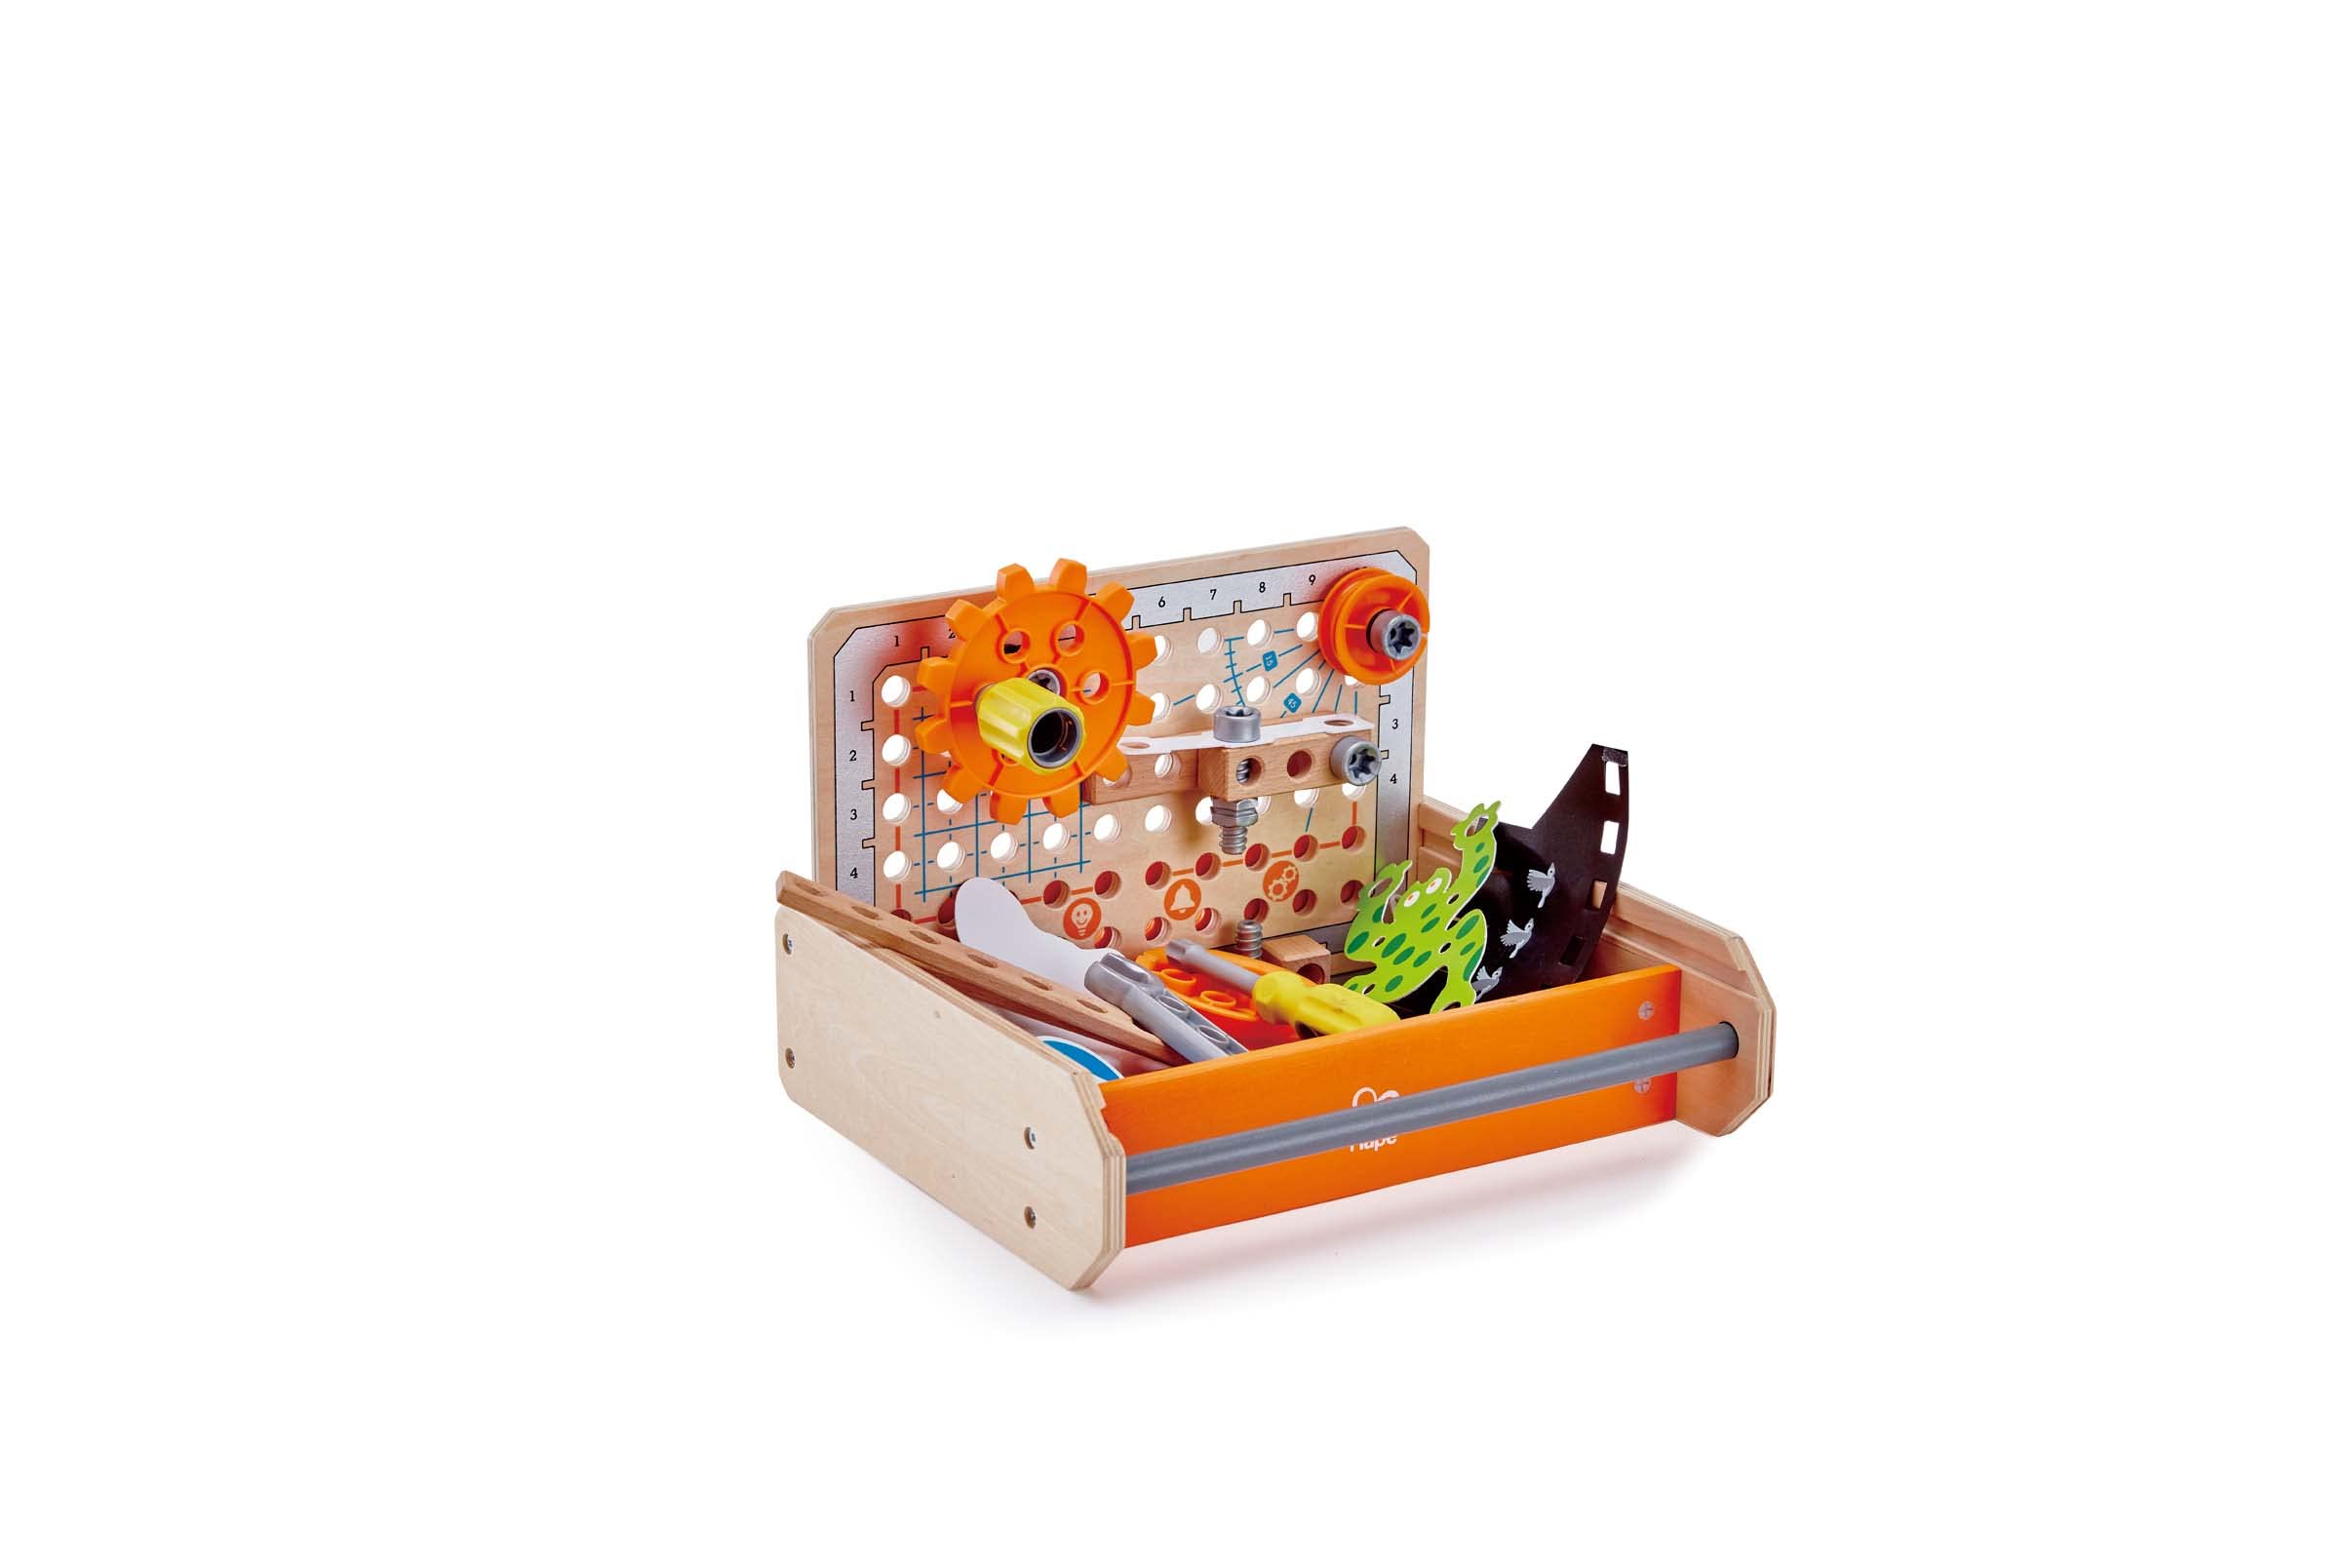 Hape Junior Inventor Tüftler Werkzeugkasten Experimentierset, Mint-Spielzeug, ab 4 Jahre